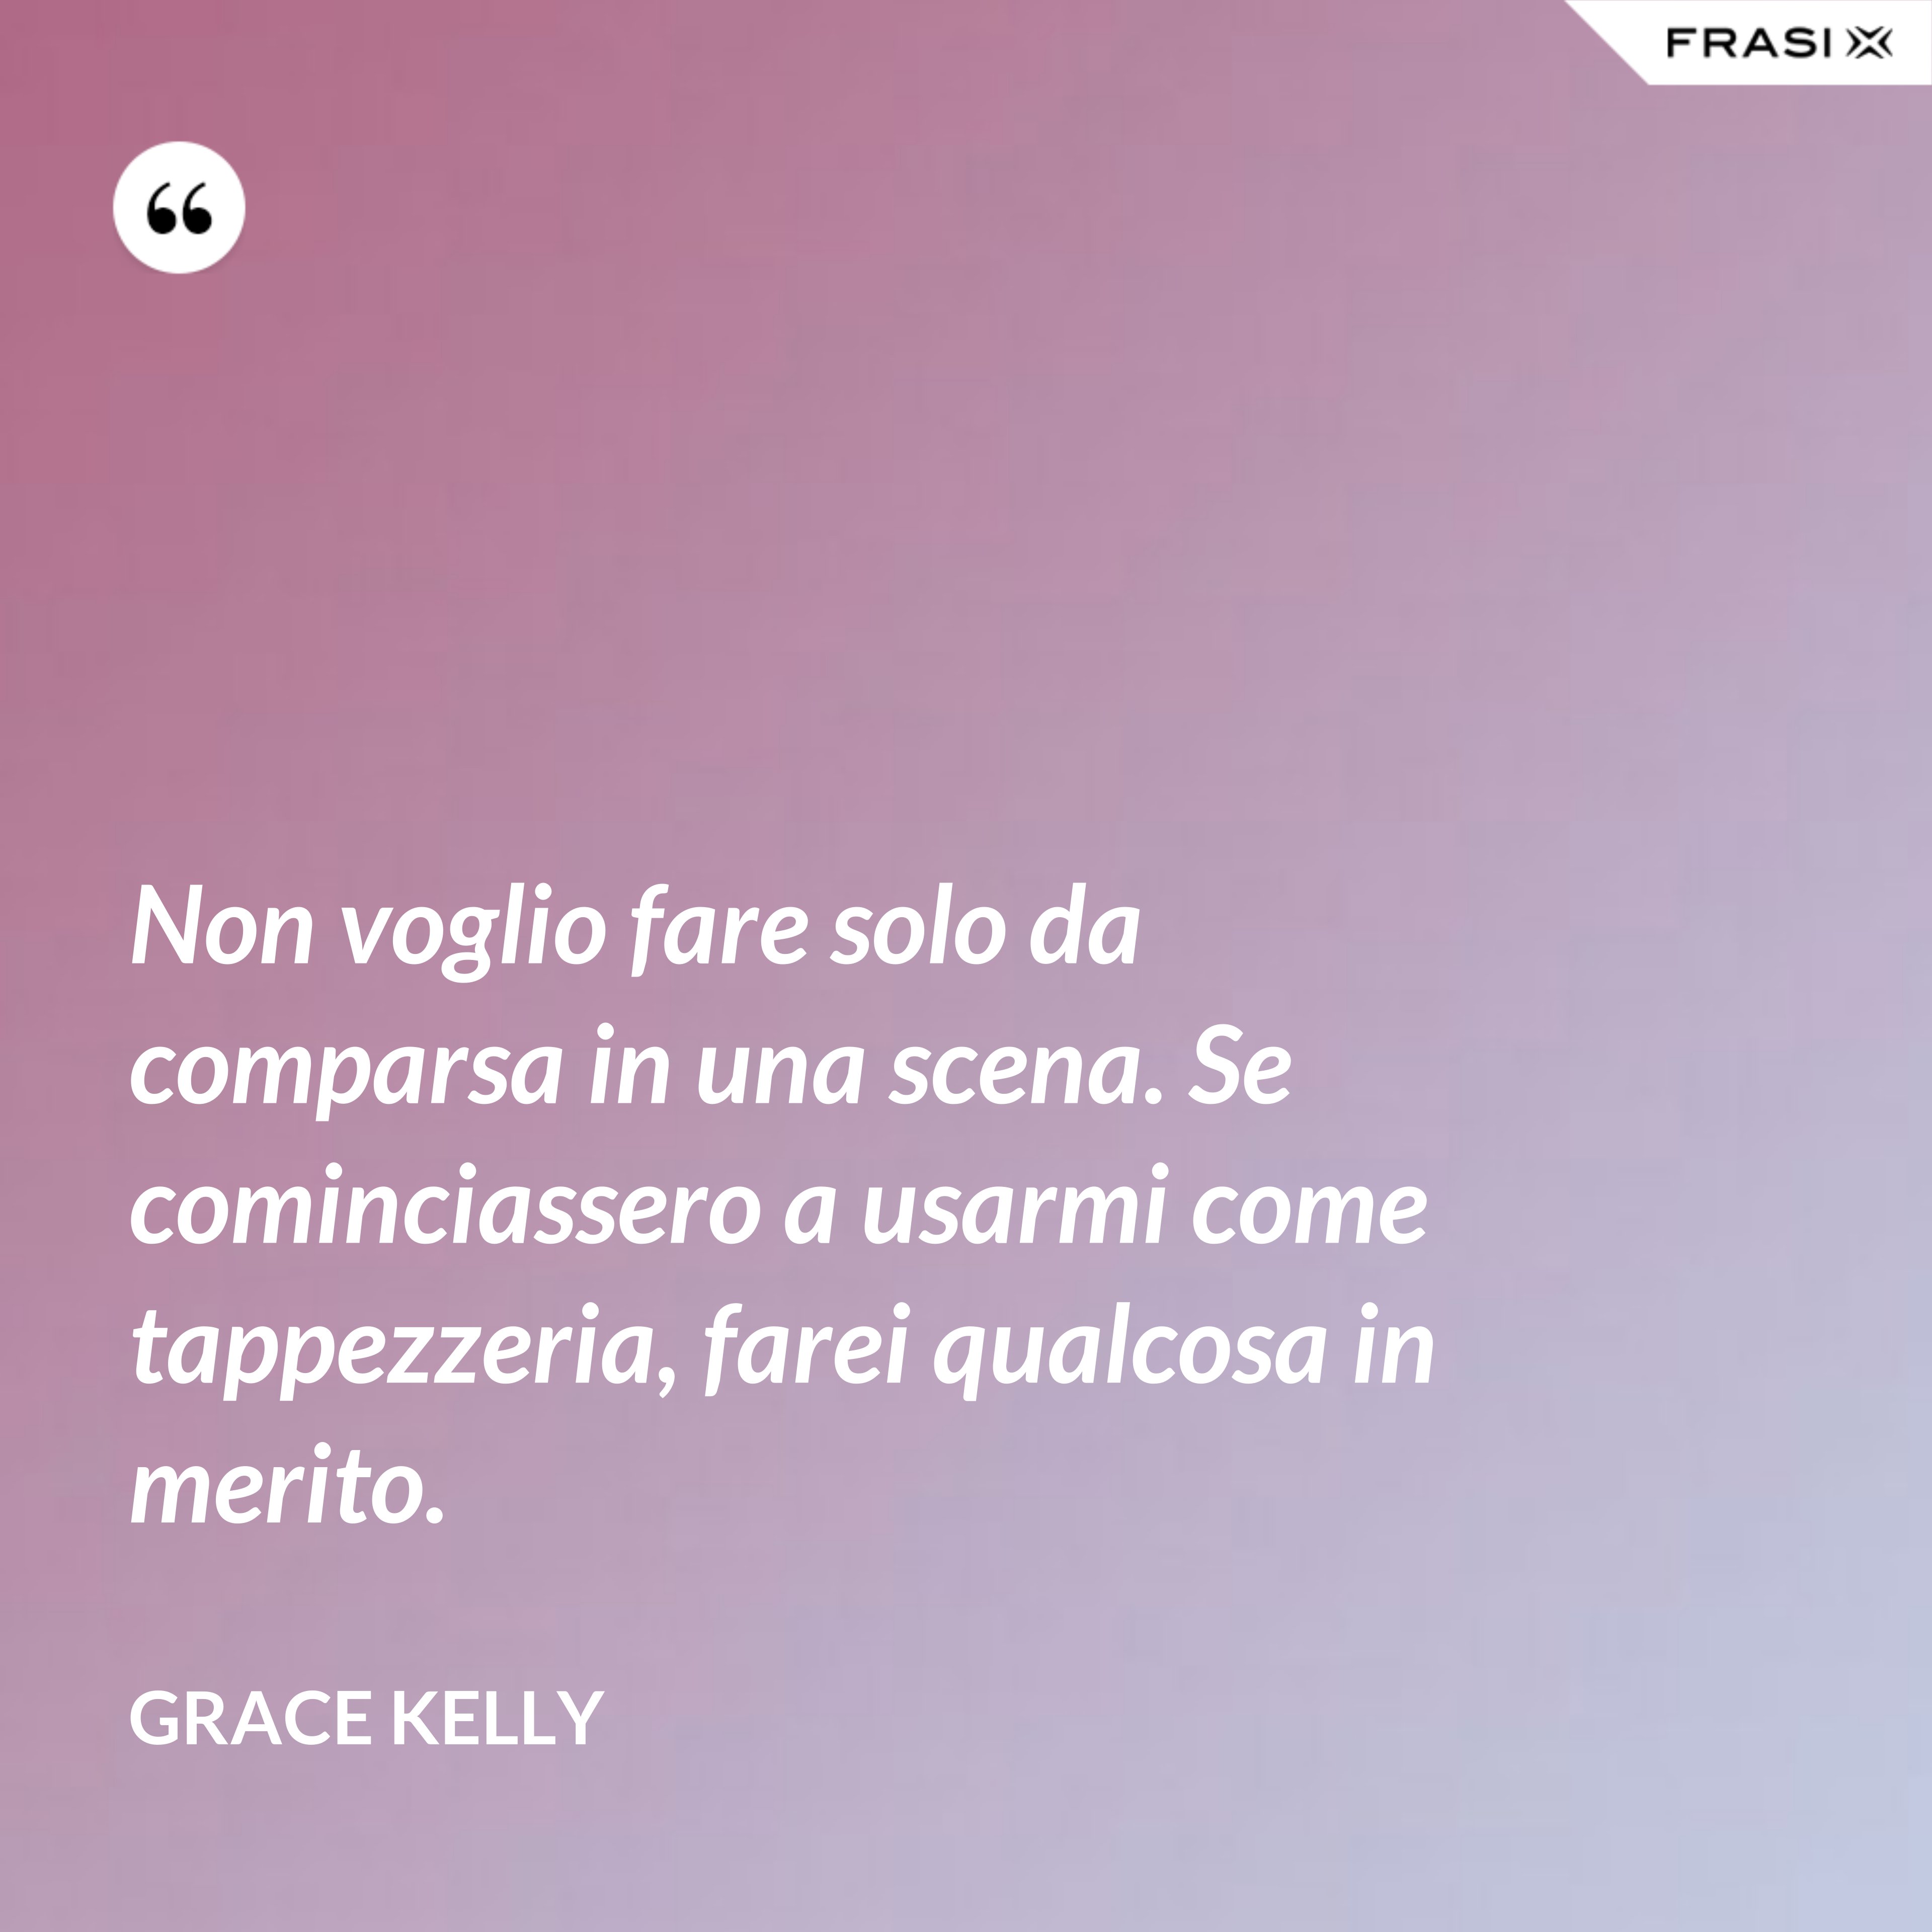 Non voglio fare solo da comparsa in una scena. Se cominciassero a usarmi come tappezzeria, farei qualcosa in merito. - Grace Kelly